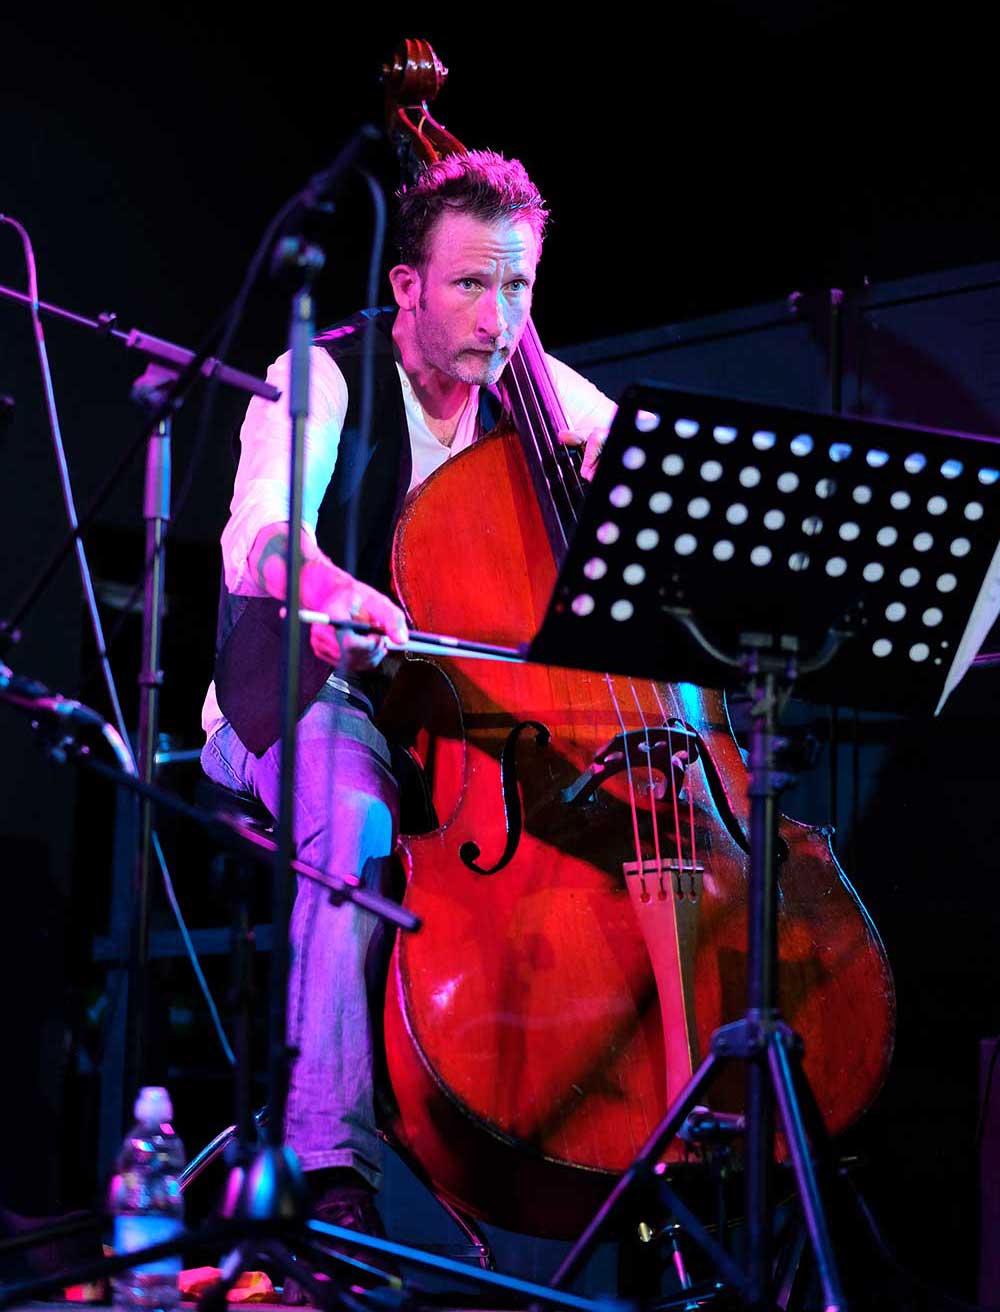 Marcel Becker playing bass